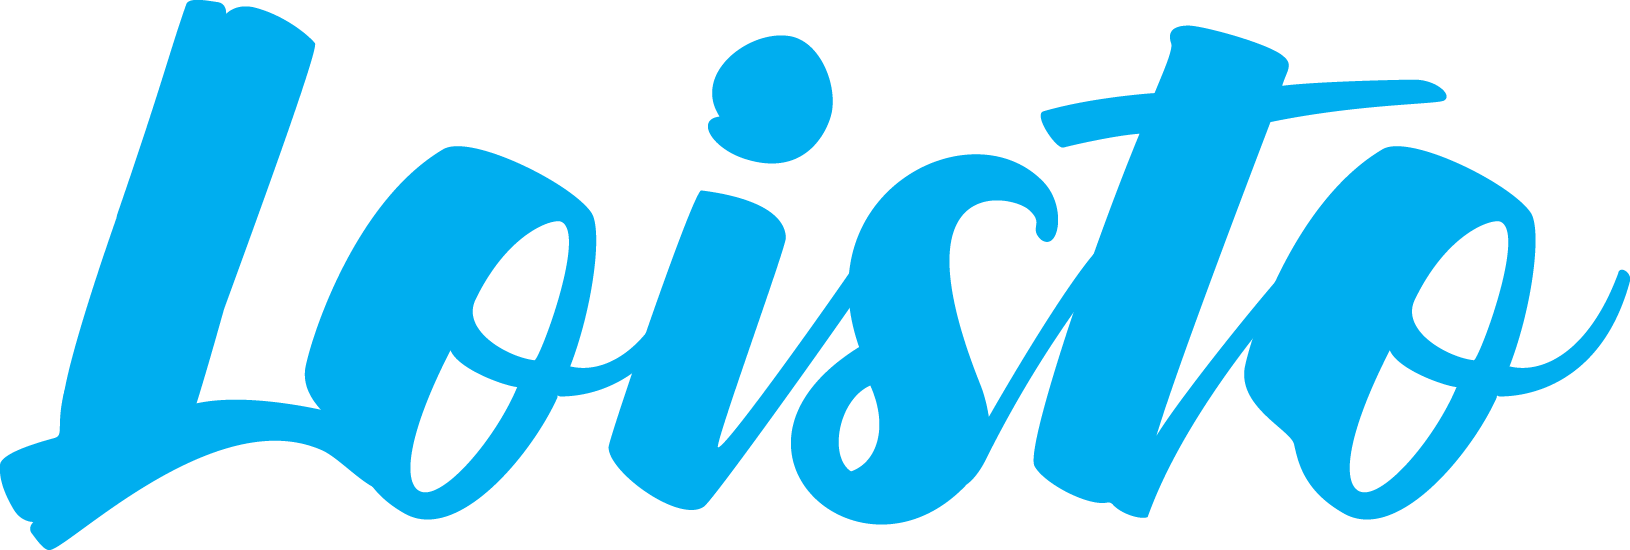 Seurakuntalehti Loiston logo